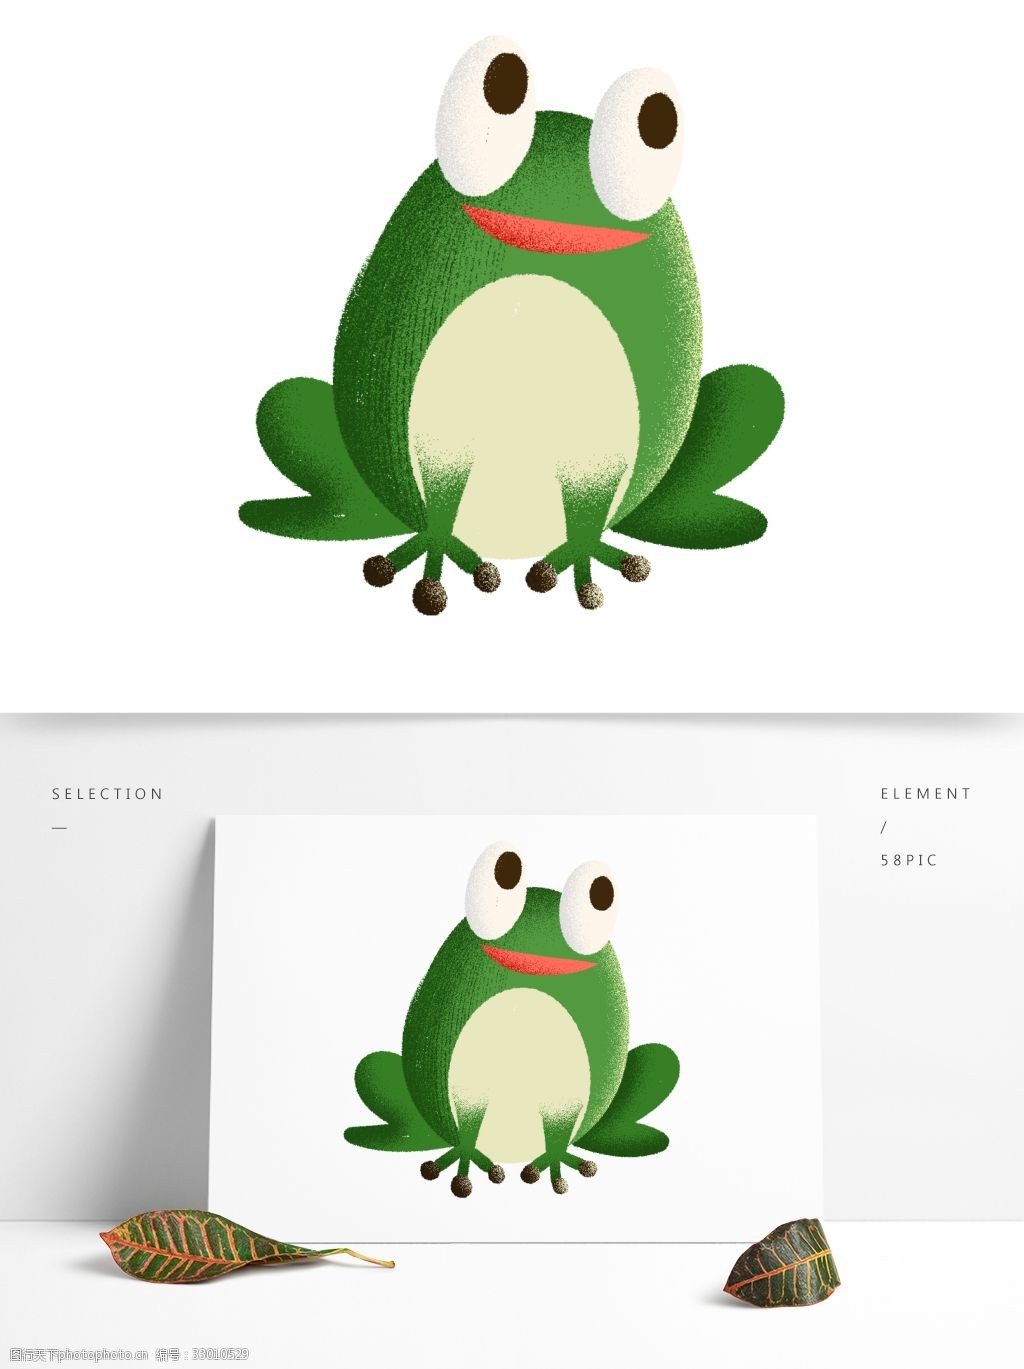 关键词:手绘简约绿色青蛙装饰素材 插画元素 绿色青蛙 可爱风 卡通